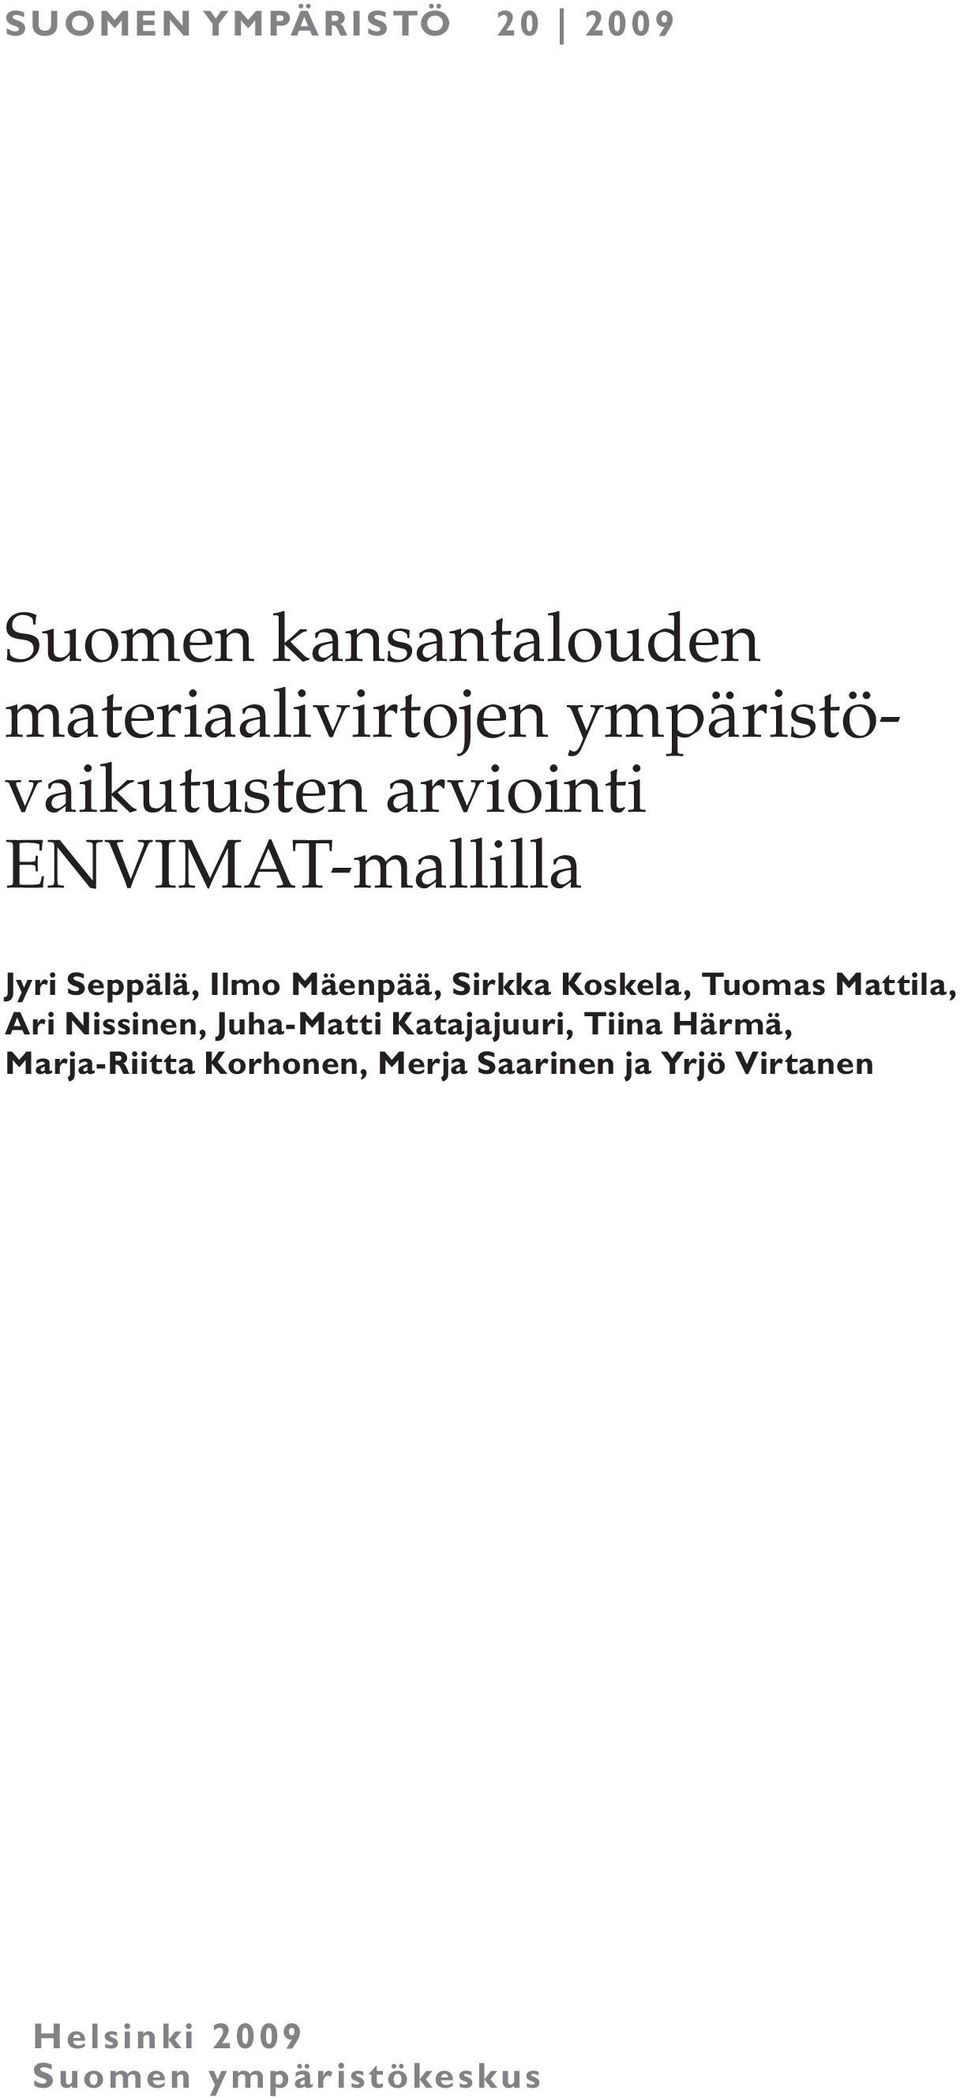 Sirkka Koskela, Tuomas Mattila, Ari Nissinen, Juha-Matti Katajajuuri, Tiina